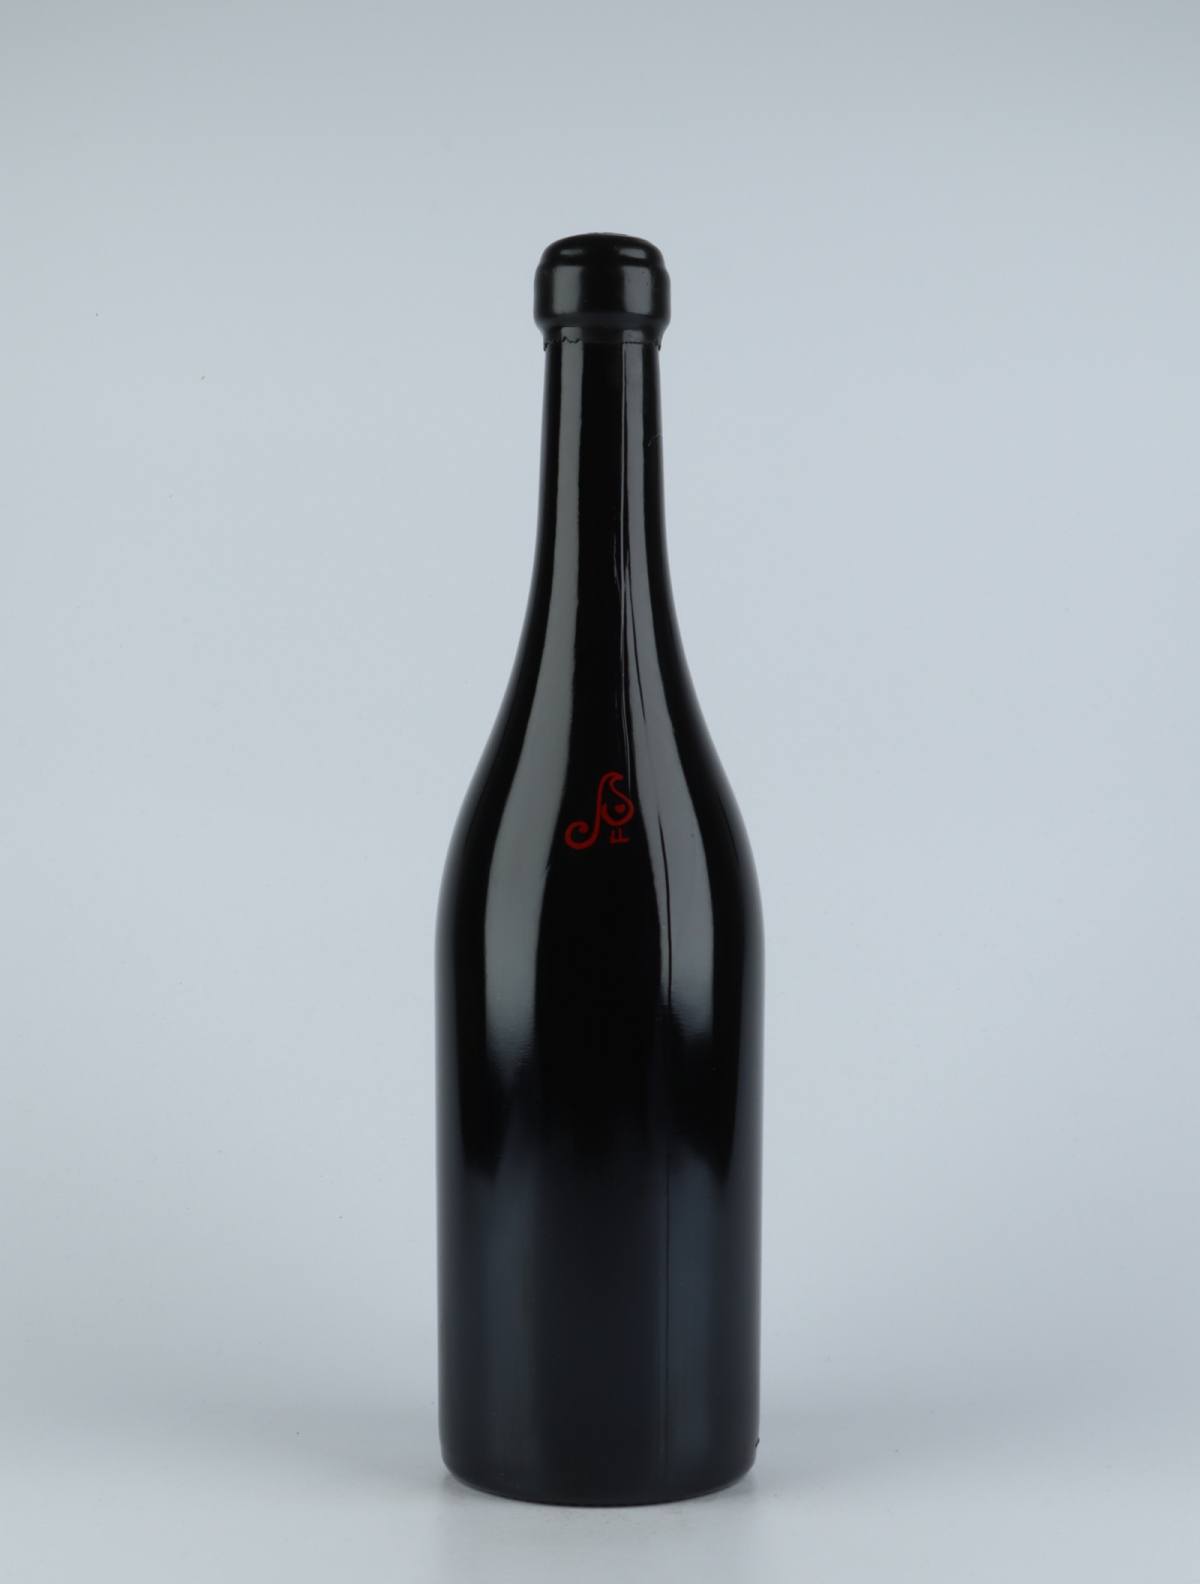 A bottle 2014 Vi Negre Red wine from Els Jelipins, Penedès in Spain